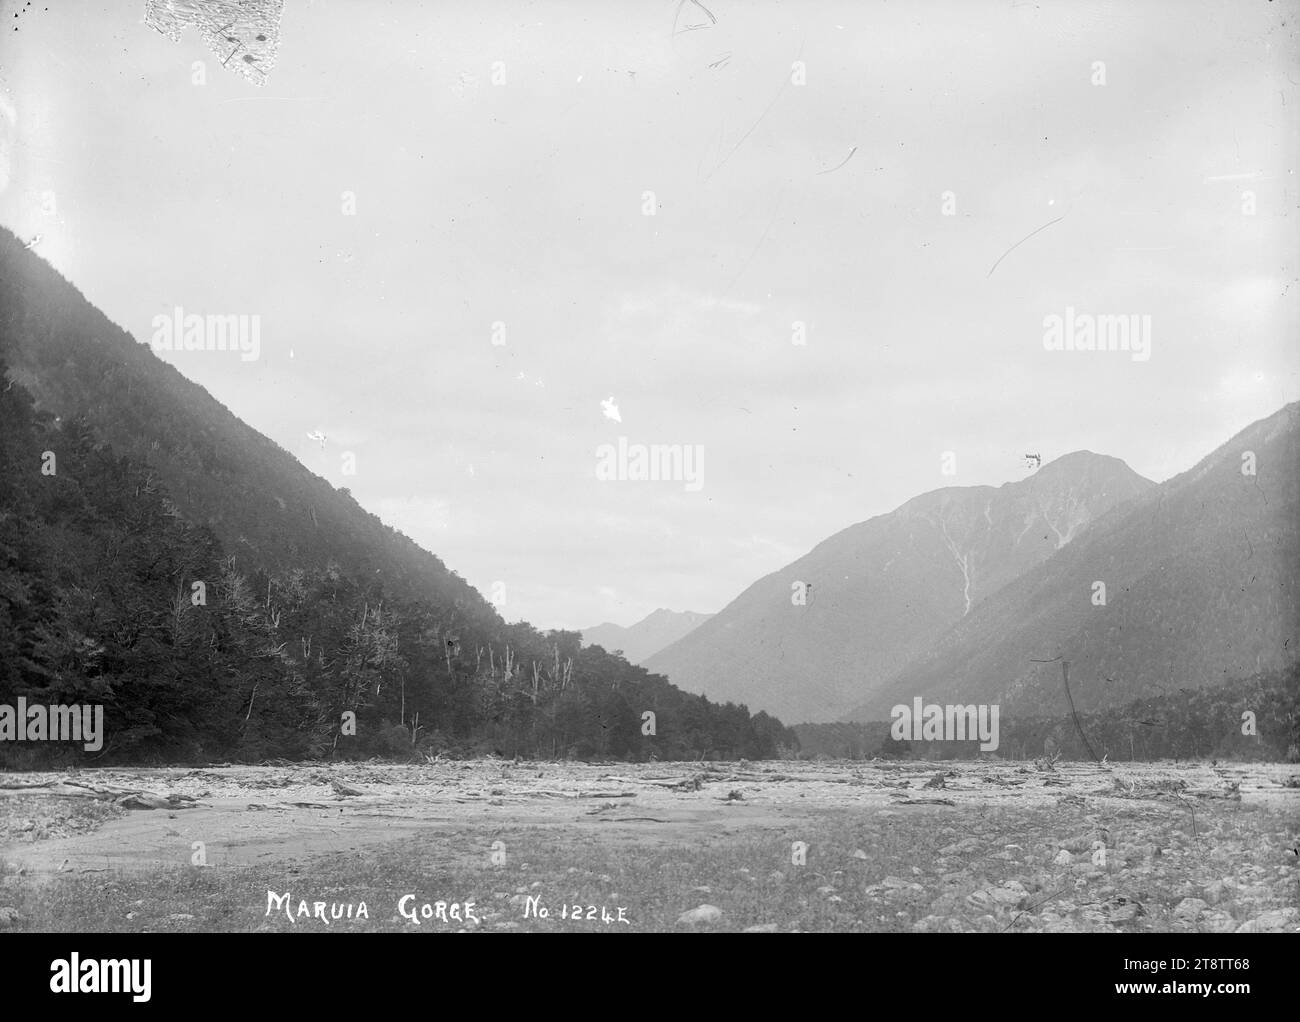 Blick auf die Maruia-Schlucht (Kannibal-Schlucht), Blick auf die Maruia-Schlucht, mit Flussflächen im Vordergrund. CA 1910s Stockfoto